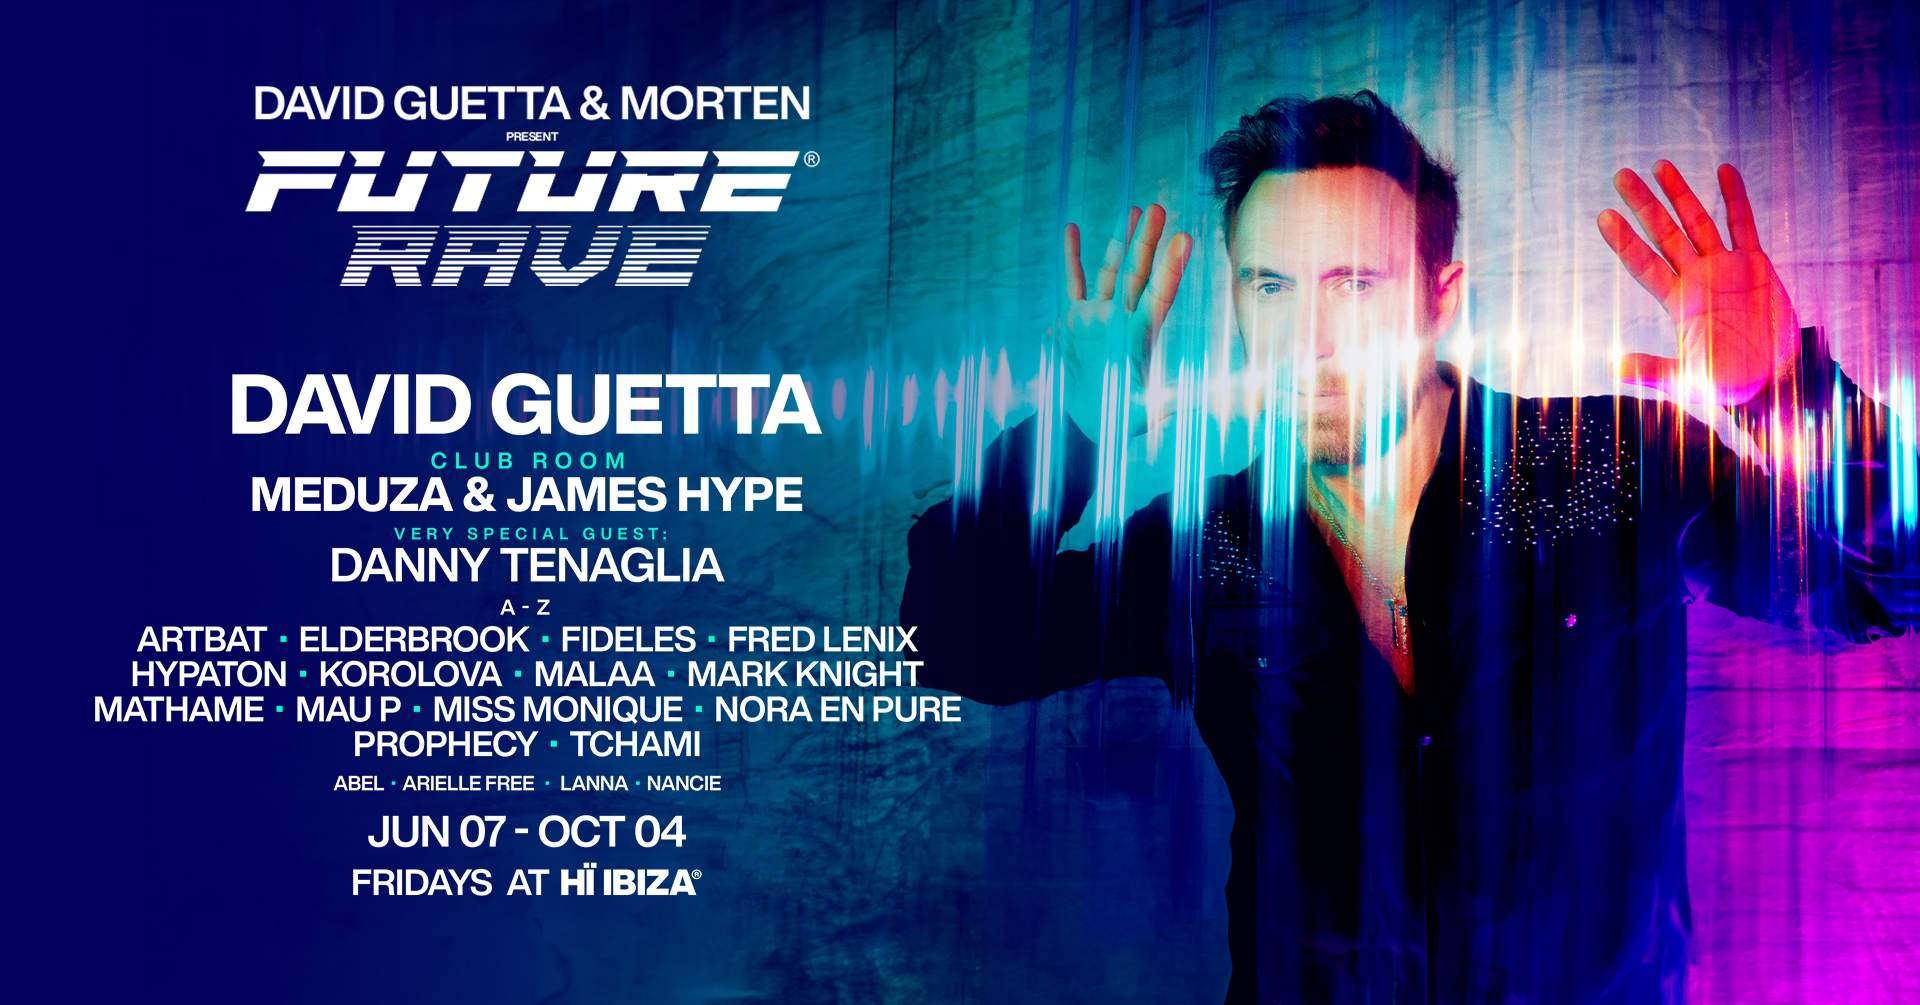 David Guetta & Morten present Future Rave - フライヤー表